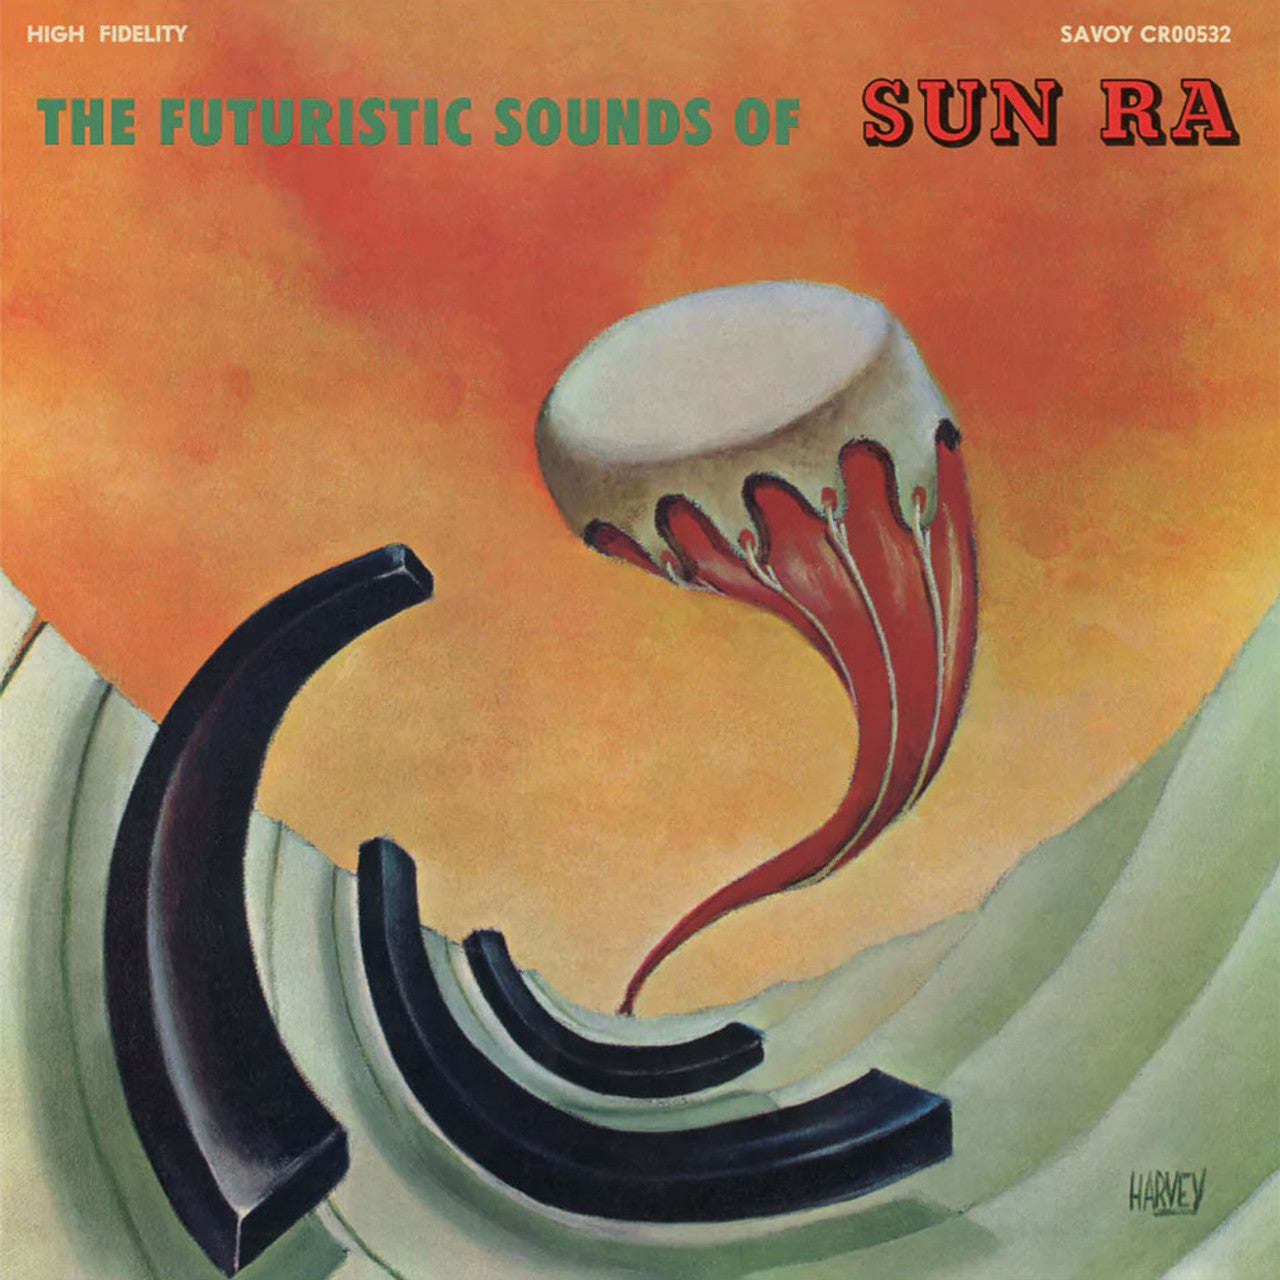 Sun Ra - Los sonidos futuristas de Sun Ra - LP 